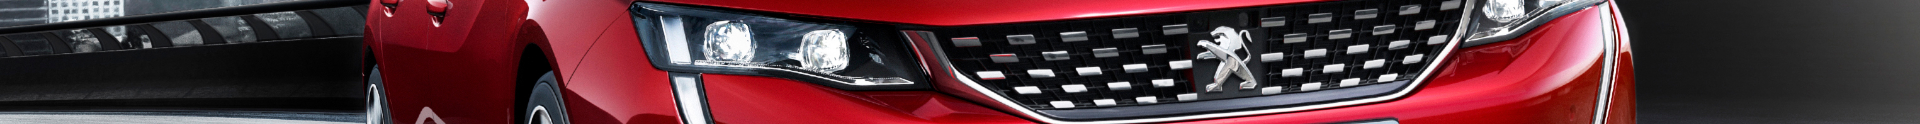 Baner marki Peugeot - Oferta samochodów w abonamencie